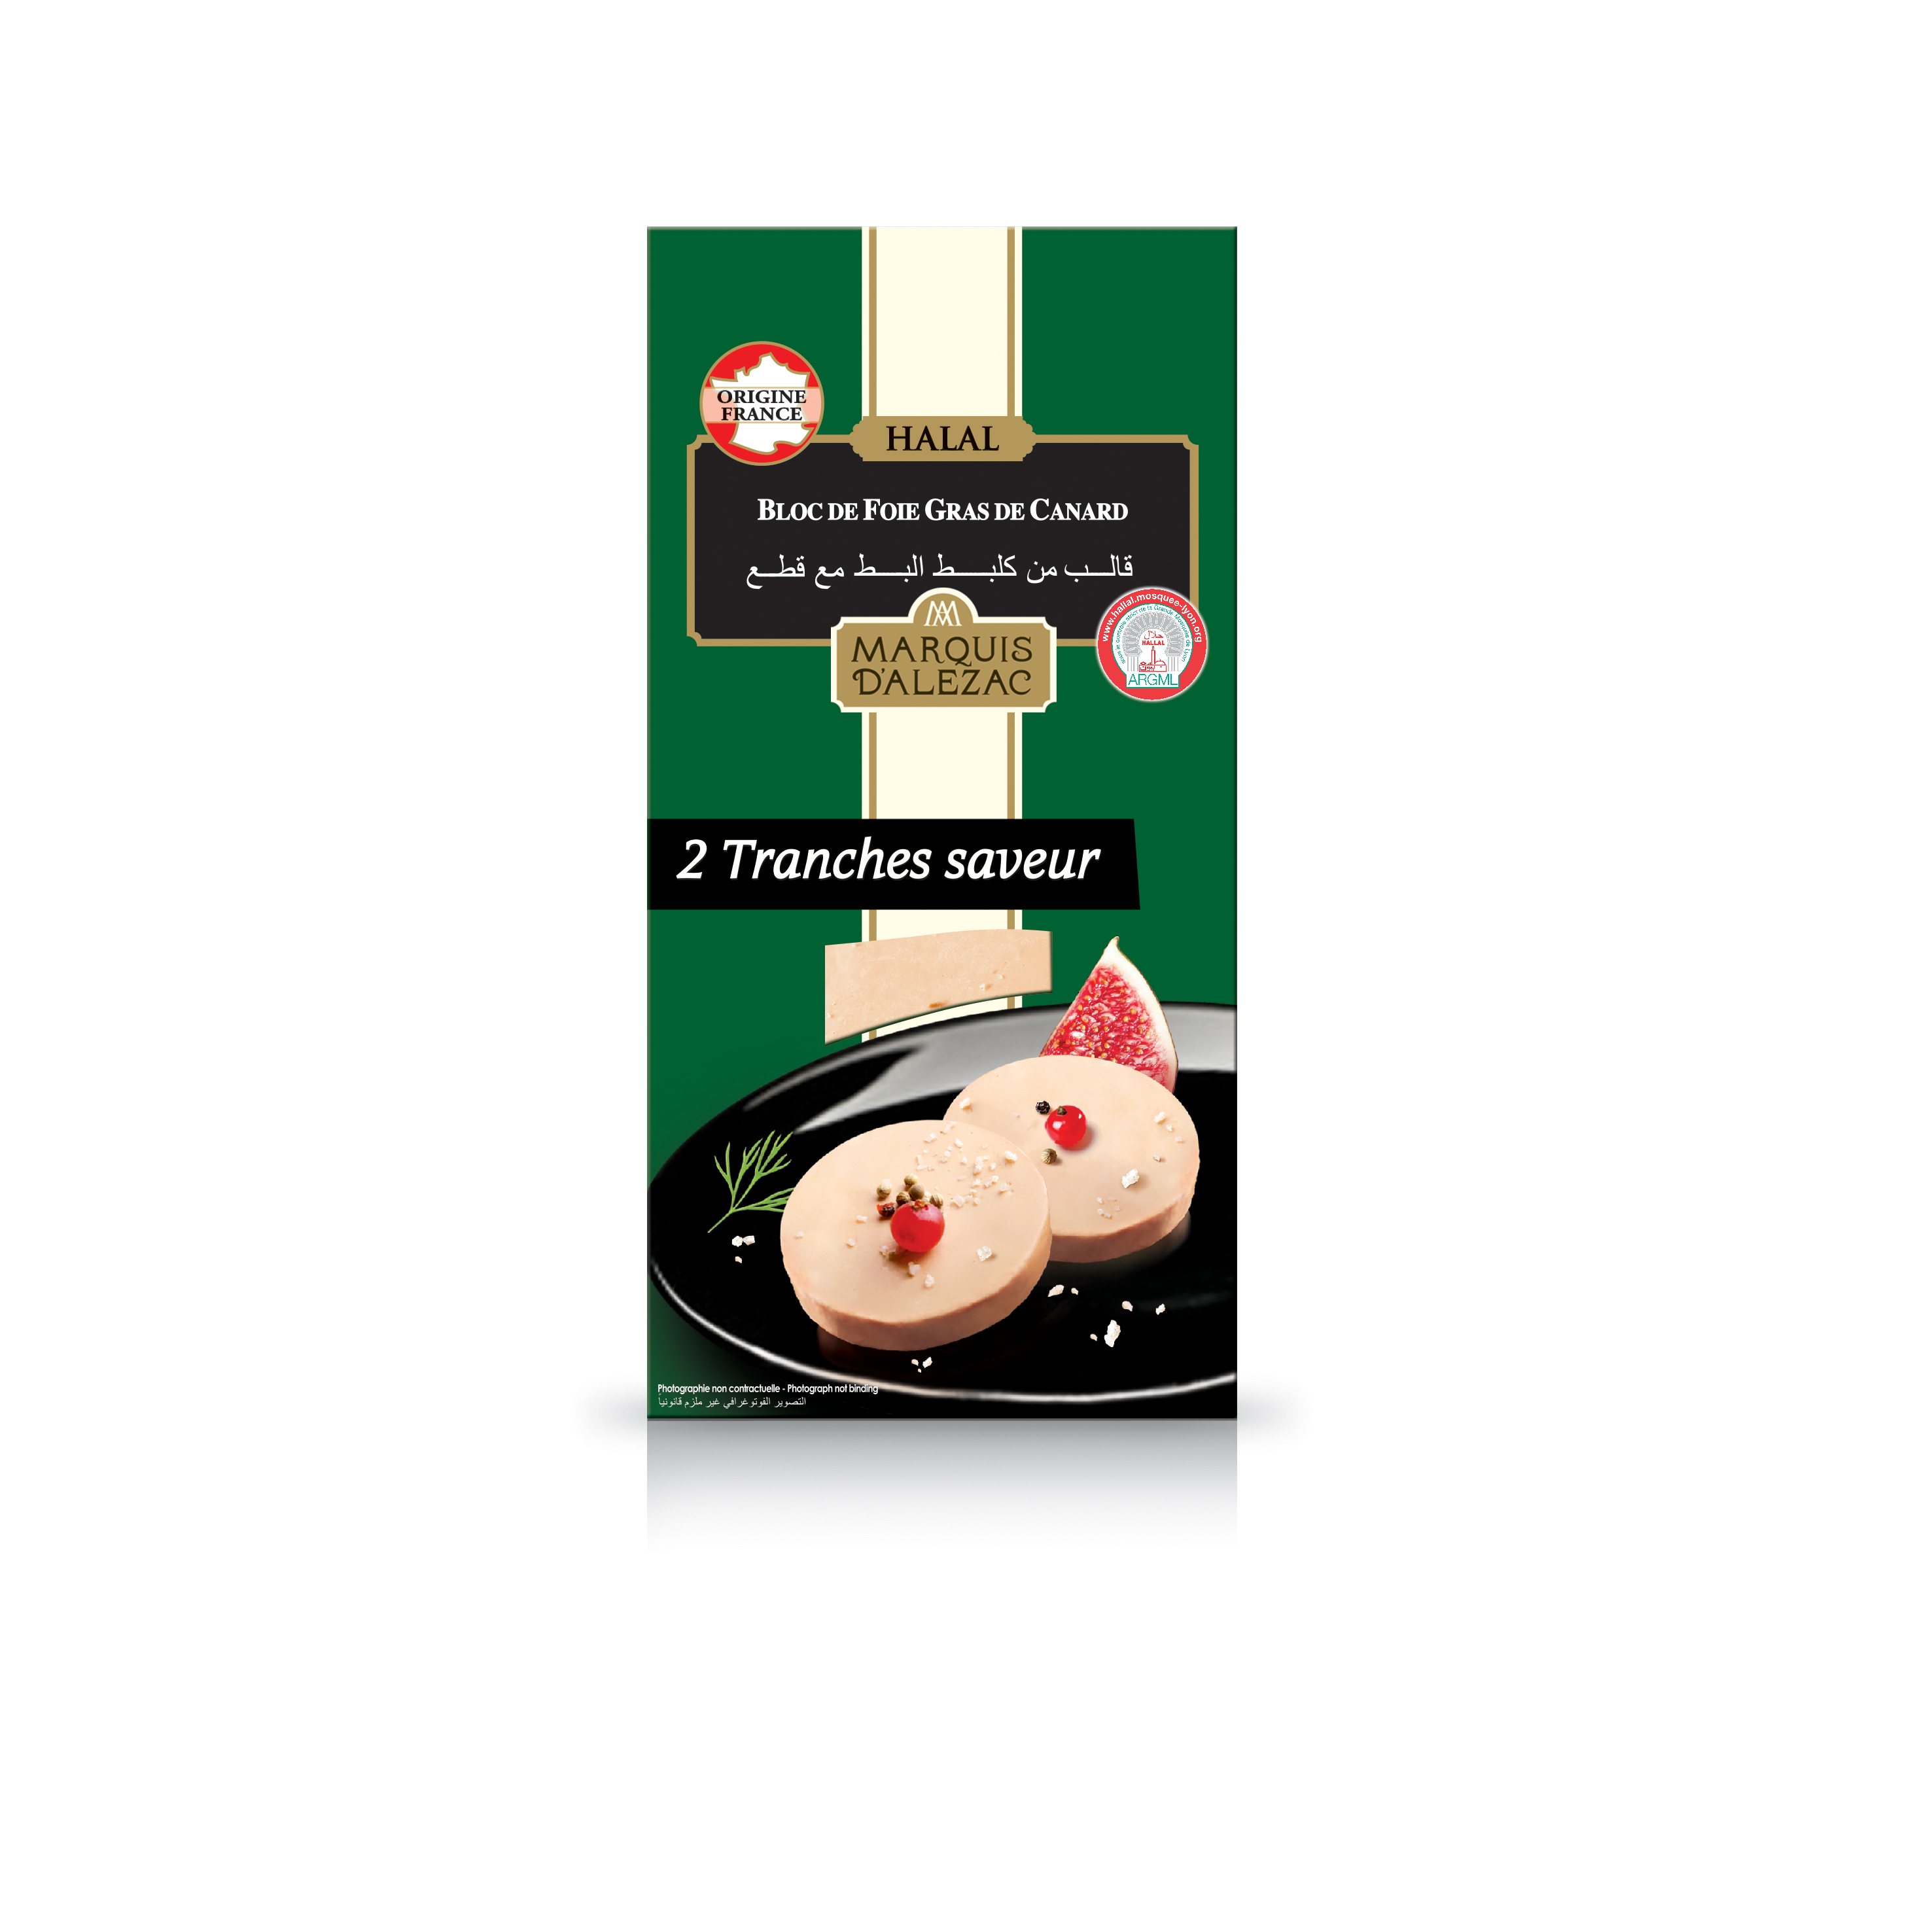 MARQUIS D ALEZAC Bloc de foie gras de canard halal 2 pièces 75g pas cher 